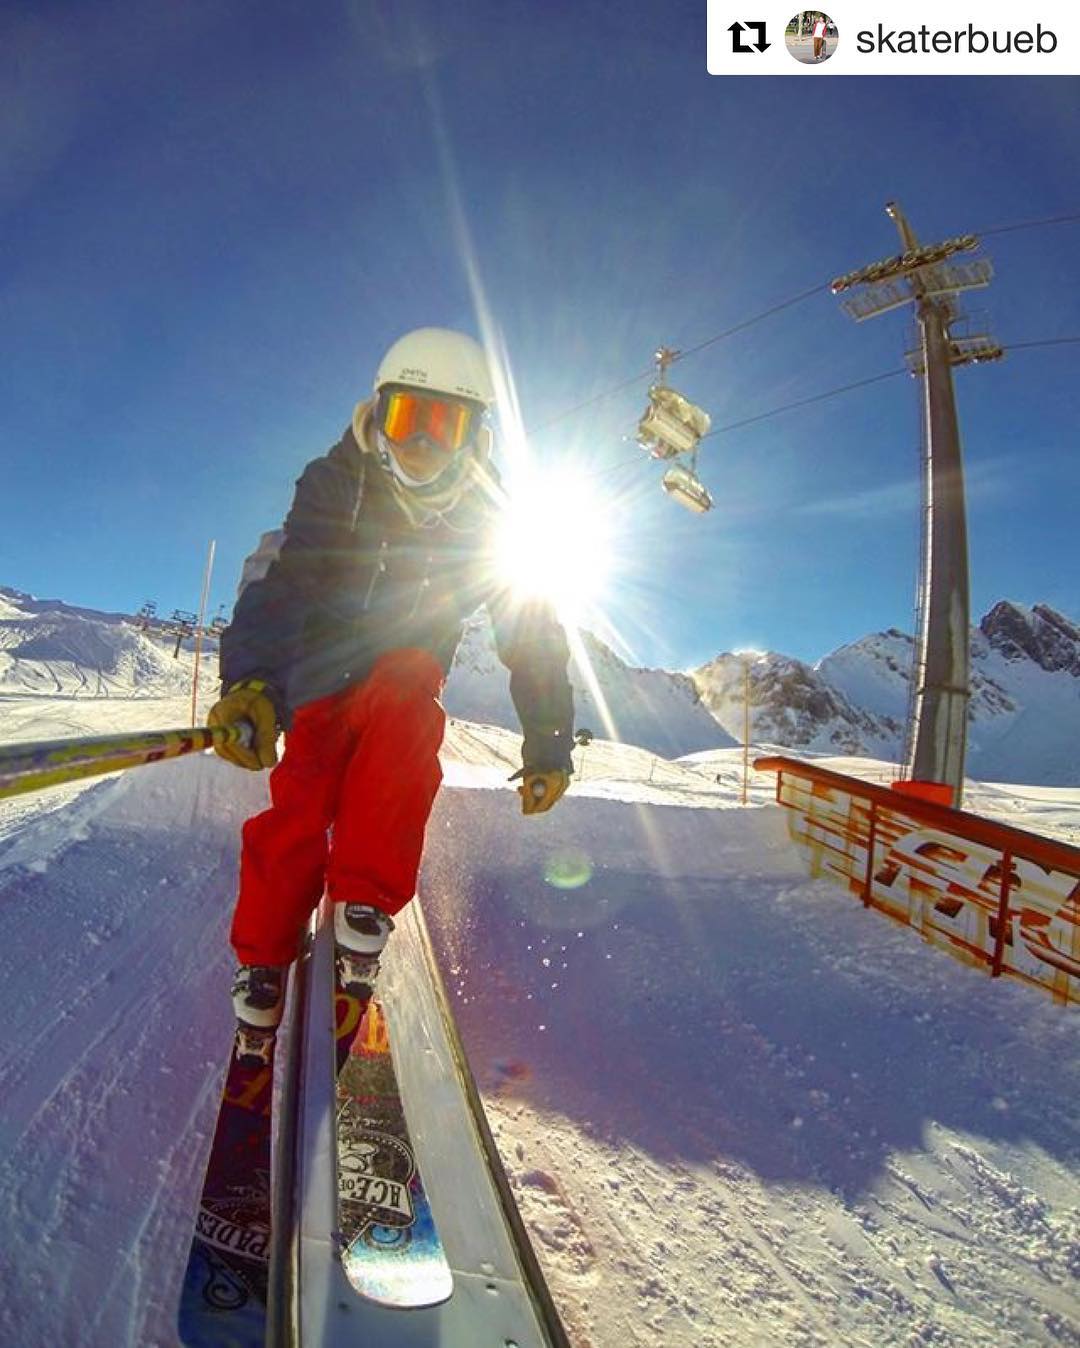 #Repost @skaterbueb Schnappschuss im @fruttpark ???・・・ski slidin at #fruttpark #skiing #freeski #park #snow #sun #gopro #selfie #slide